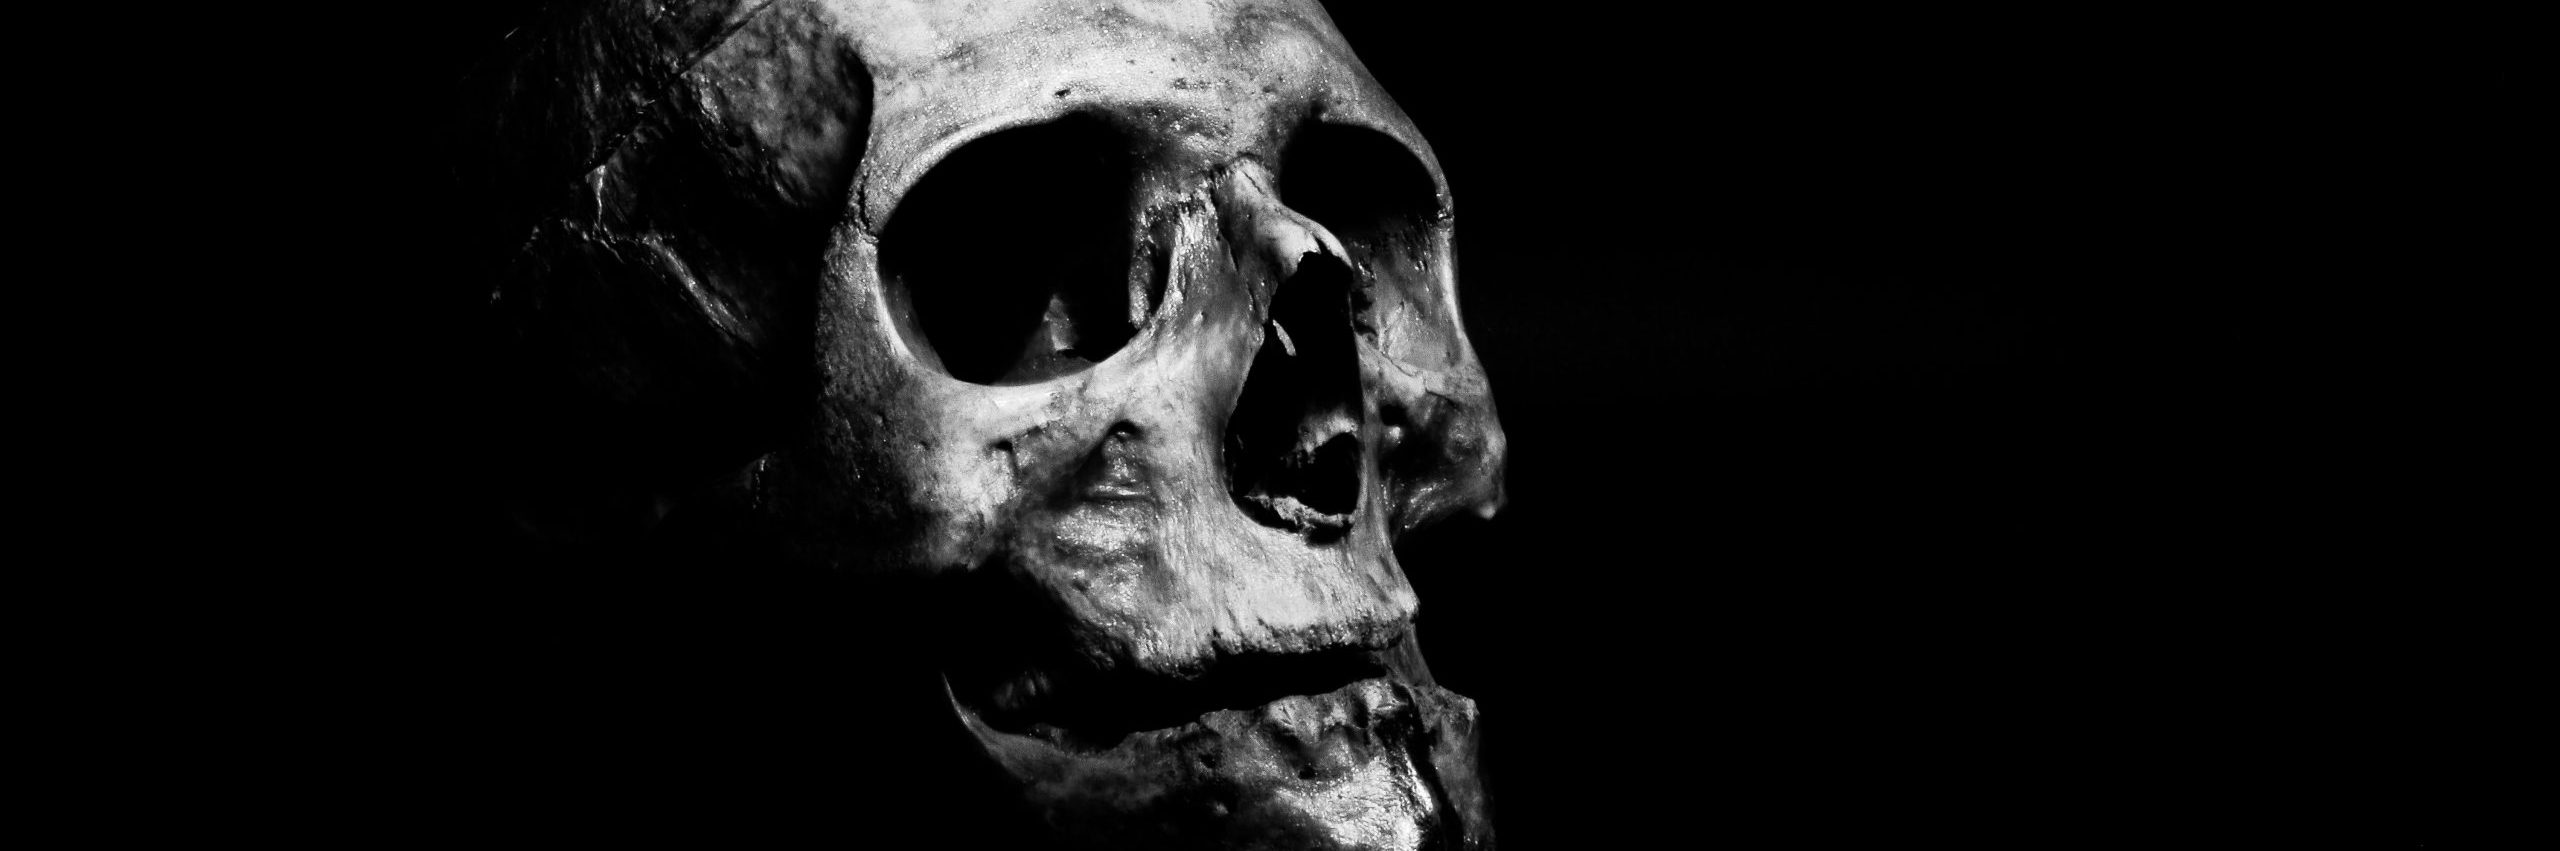 La muerte es un relato escrito por Miguel Rodríguez Echeandía que continua la historia del exorcista en busca de su alma.